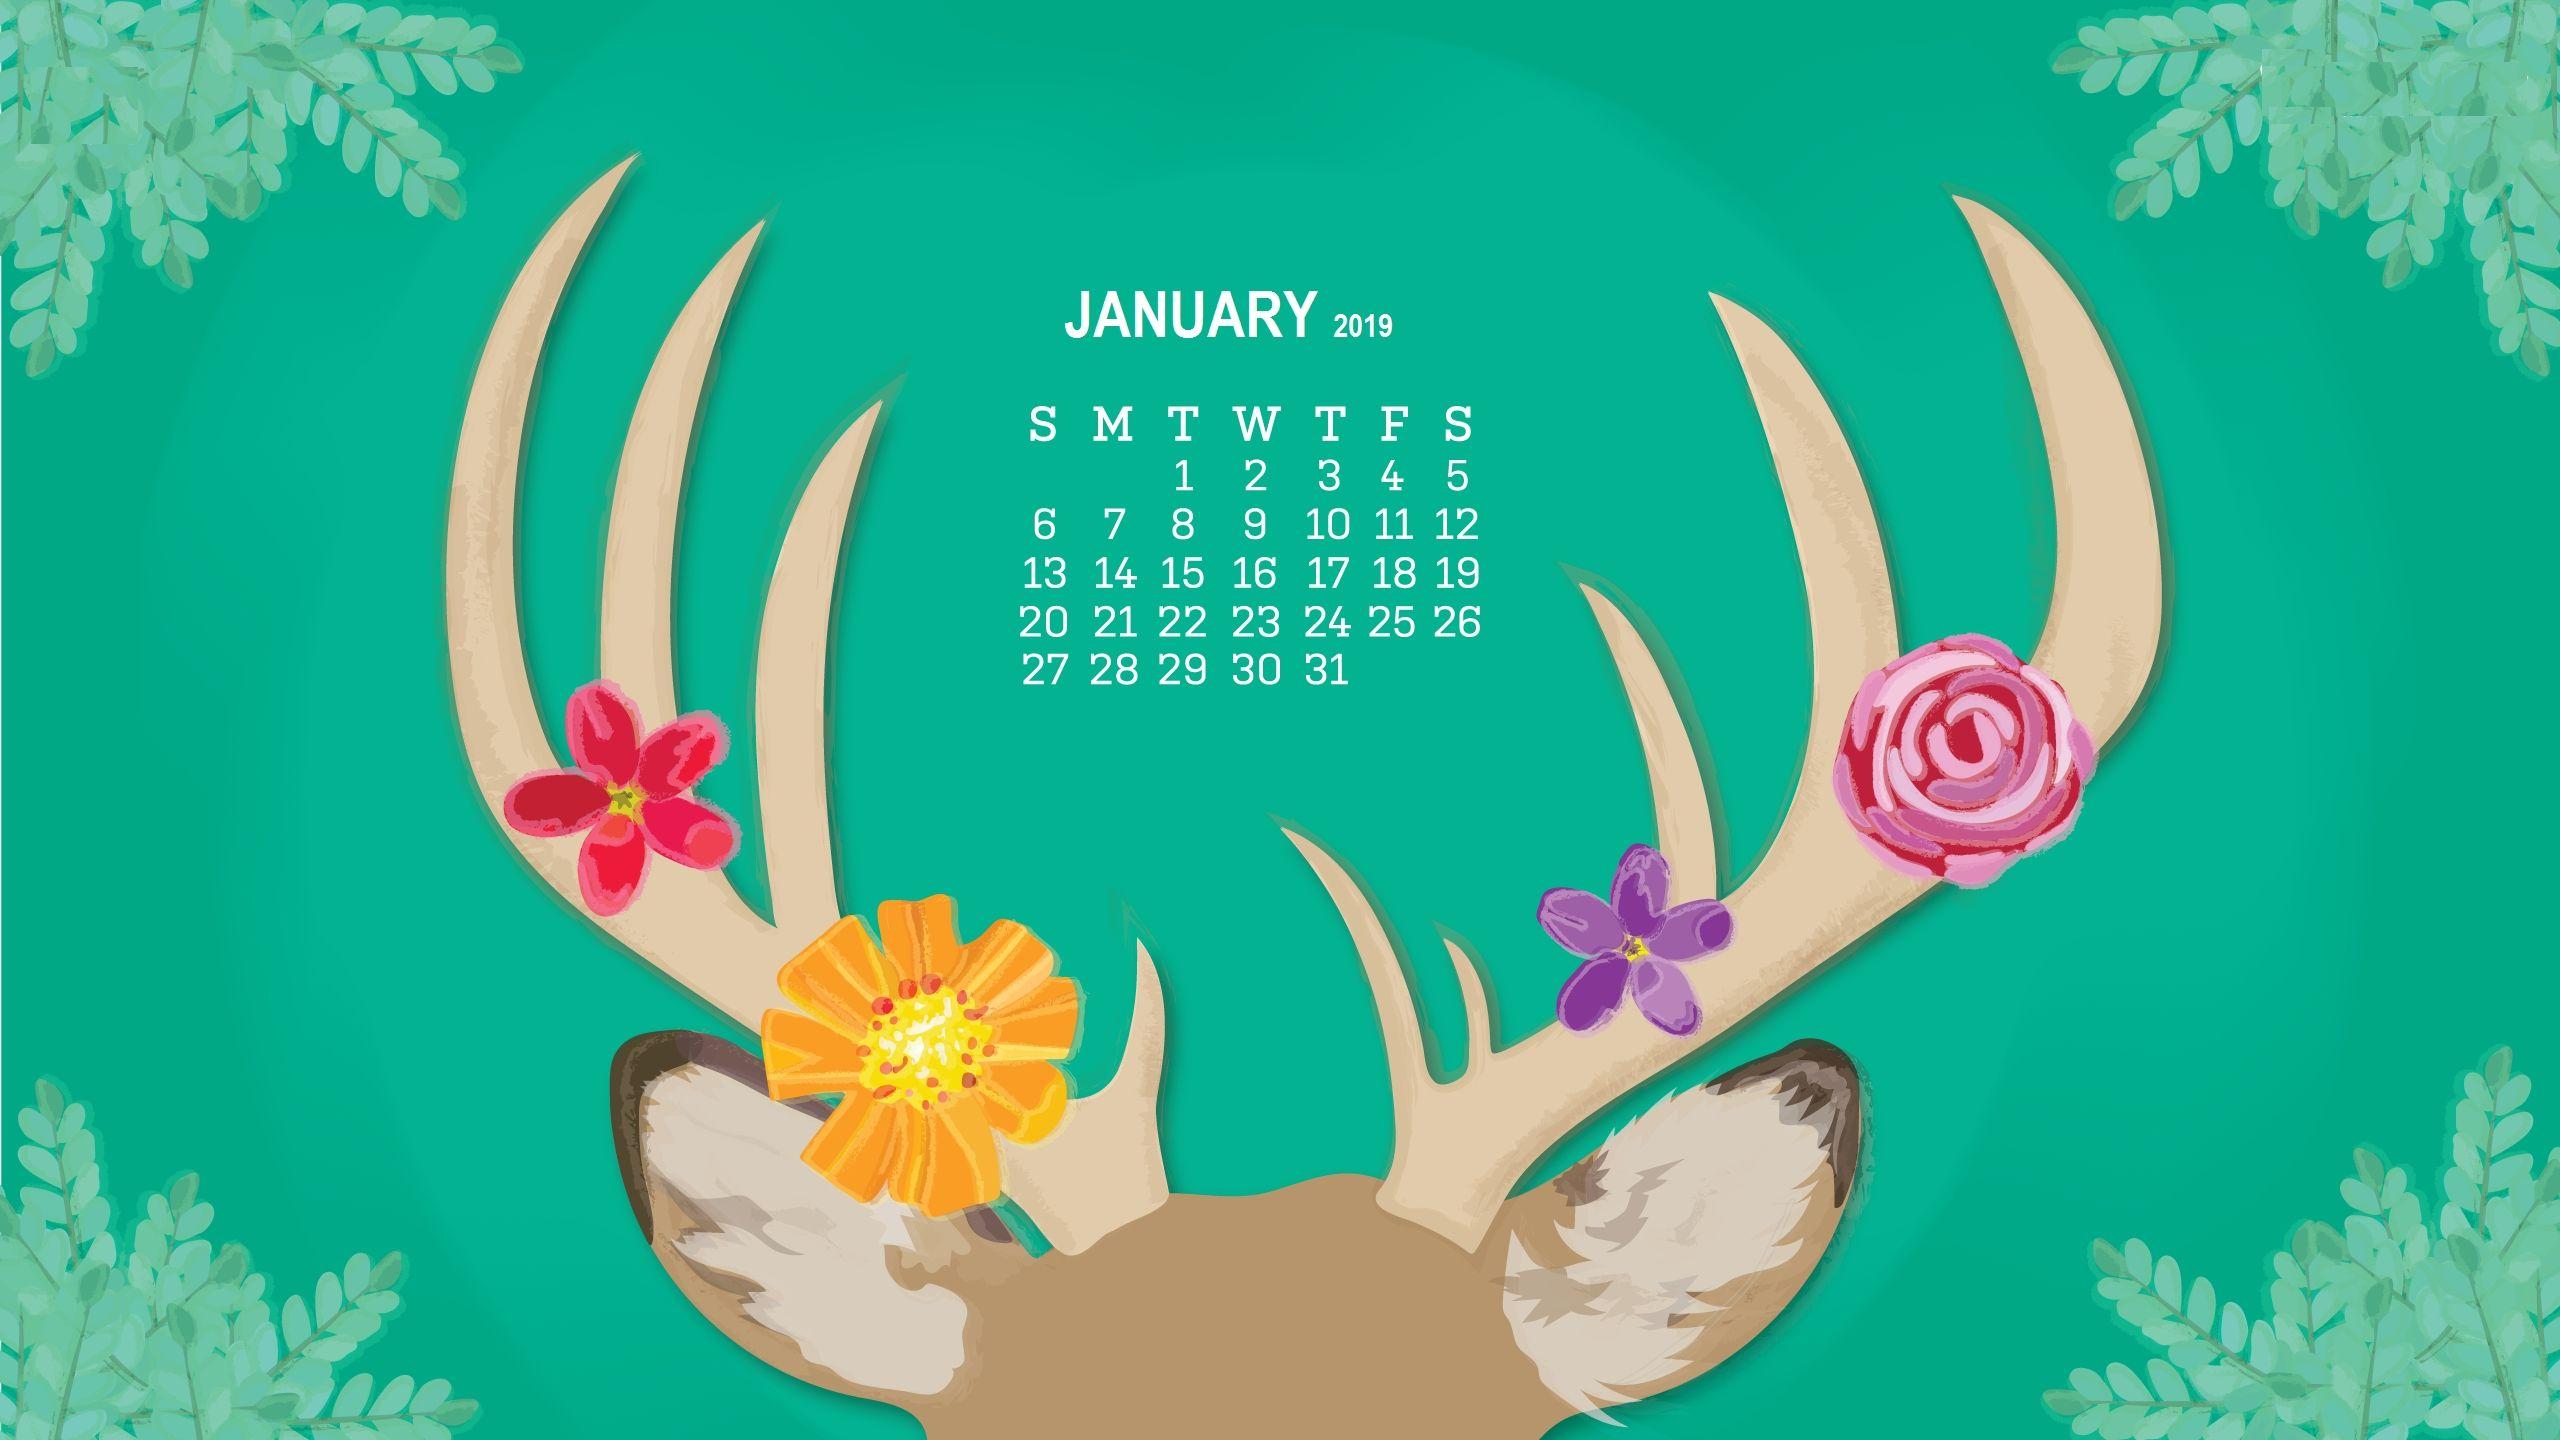 monthly desktop calendar 2019 wallpaper calendar 2019january 2019